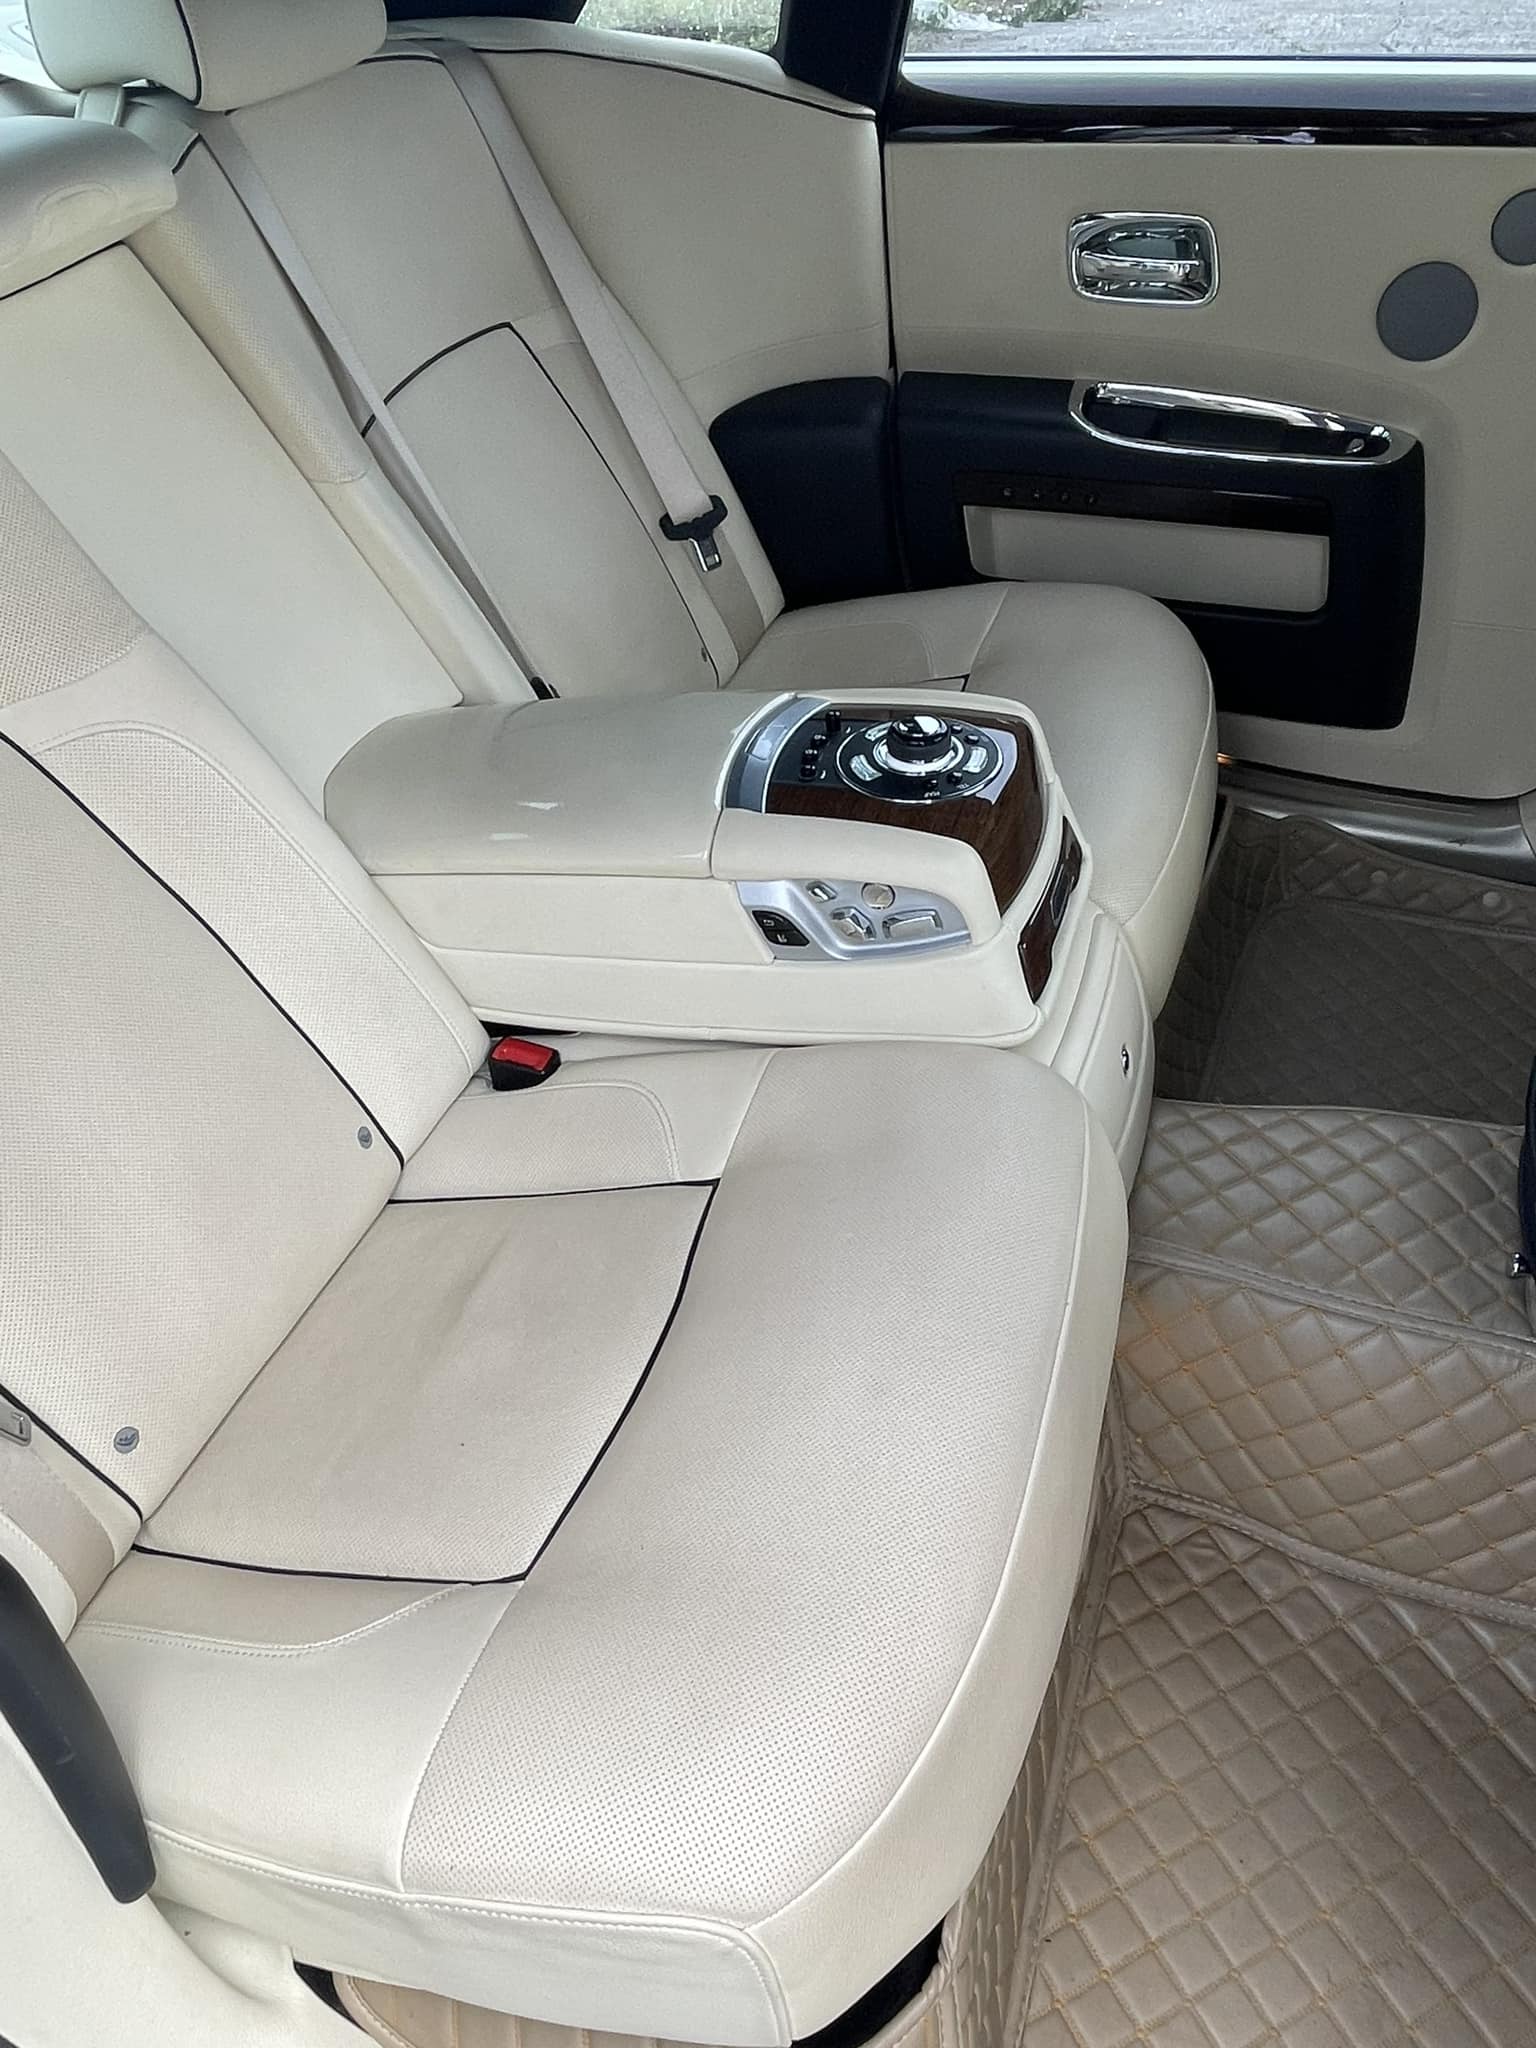 Rolls-Royce Ghost 11 năm tuổi độ kit như bản 2024: Rao bán 10 tỷ đồng nhưng có điểm dễ khiến khách đặt câu hỏi - ảnh 11